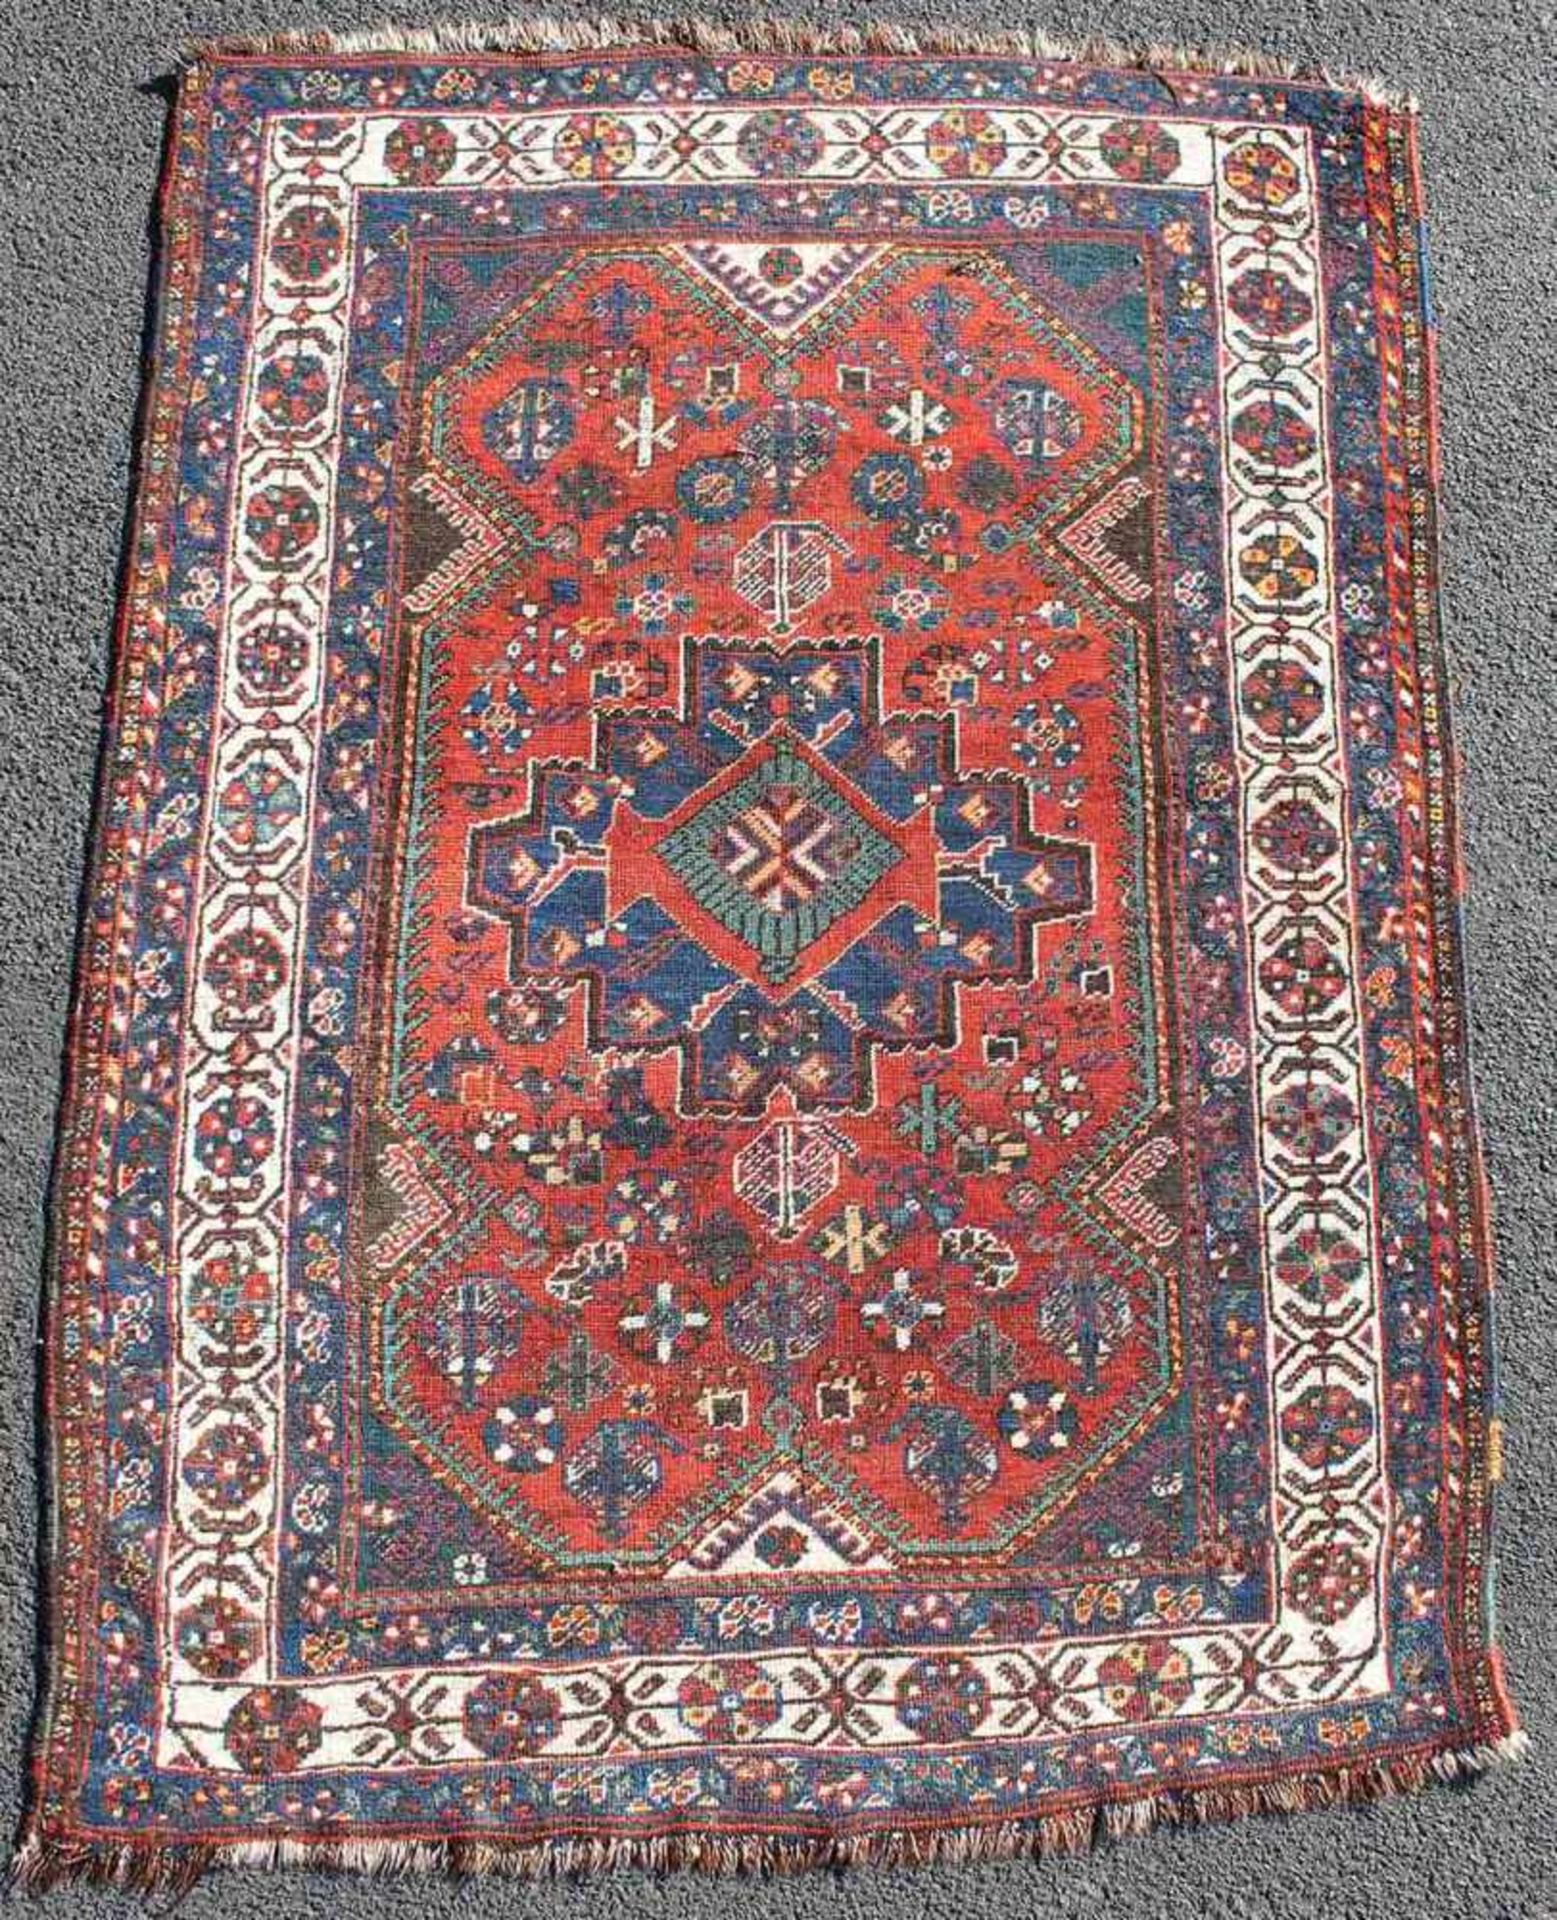 Schiraz Perserteppich. Iran. Antik, um 1920.153 cm x 110 cm. Handgeknüpft. Wolle auf Wolle.